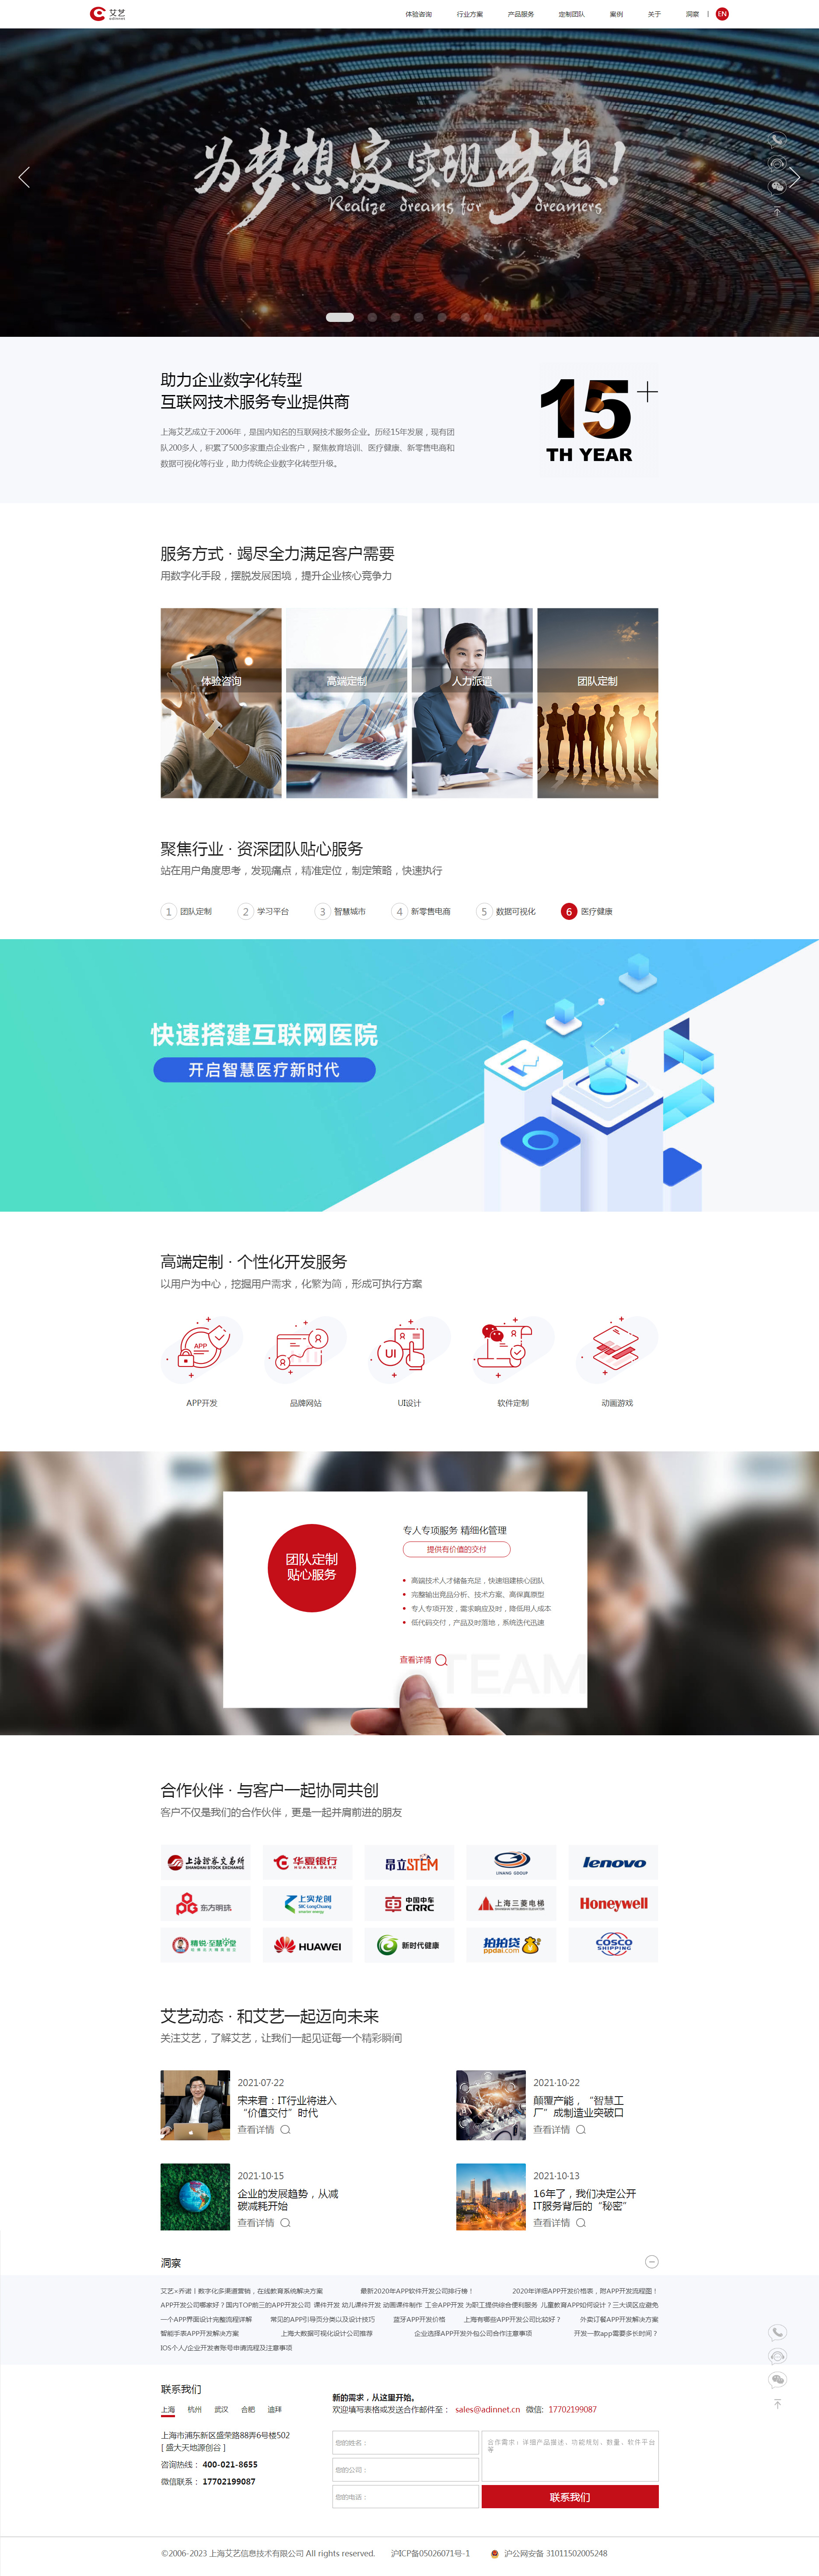 上海艾艺信息技术网站设计效果图